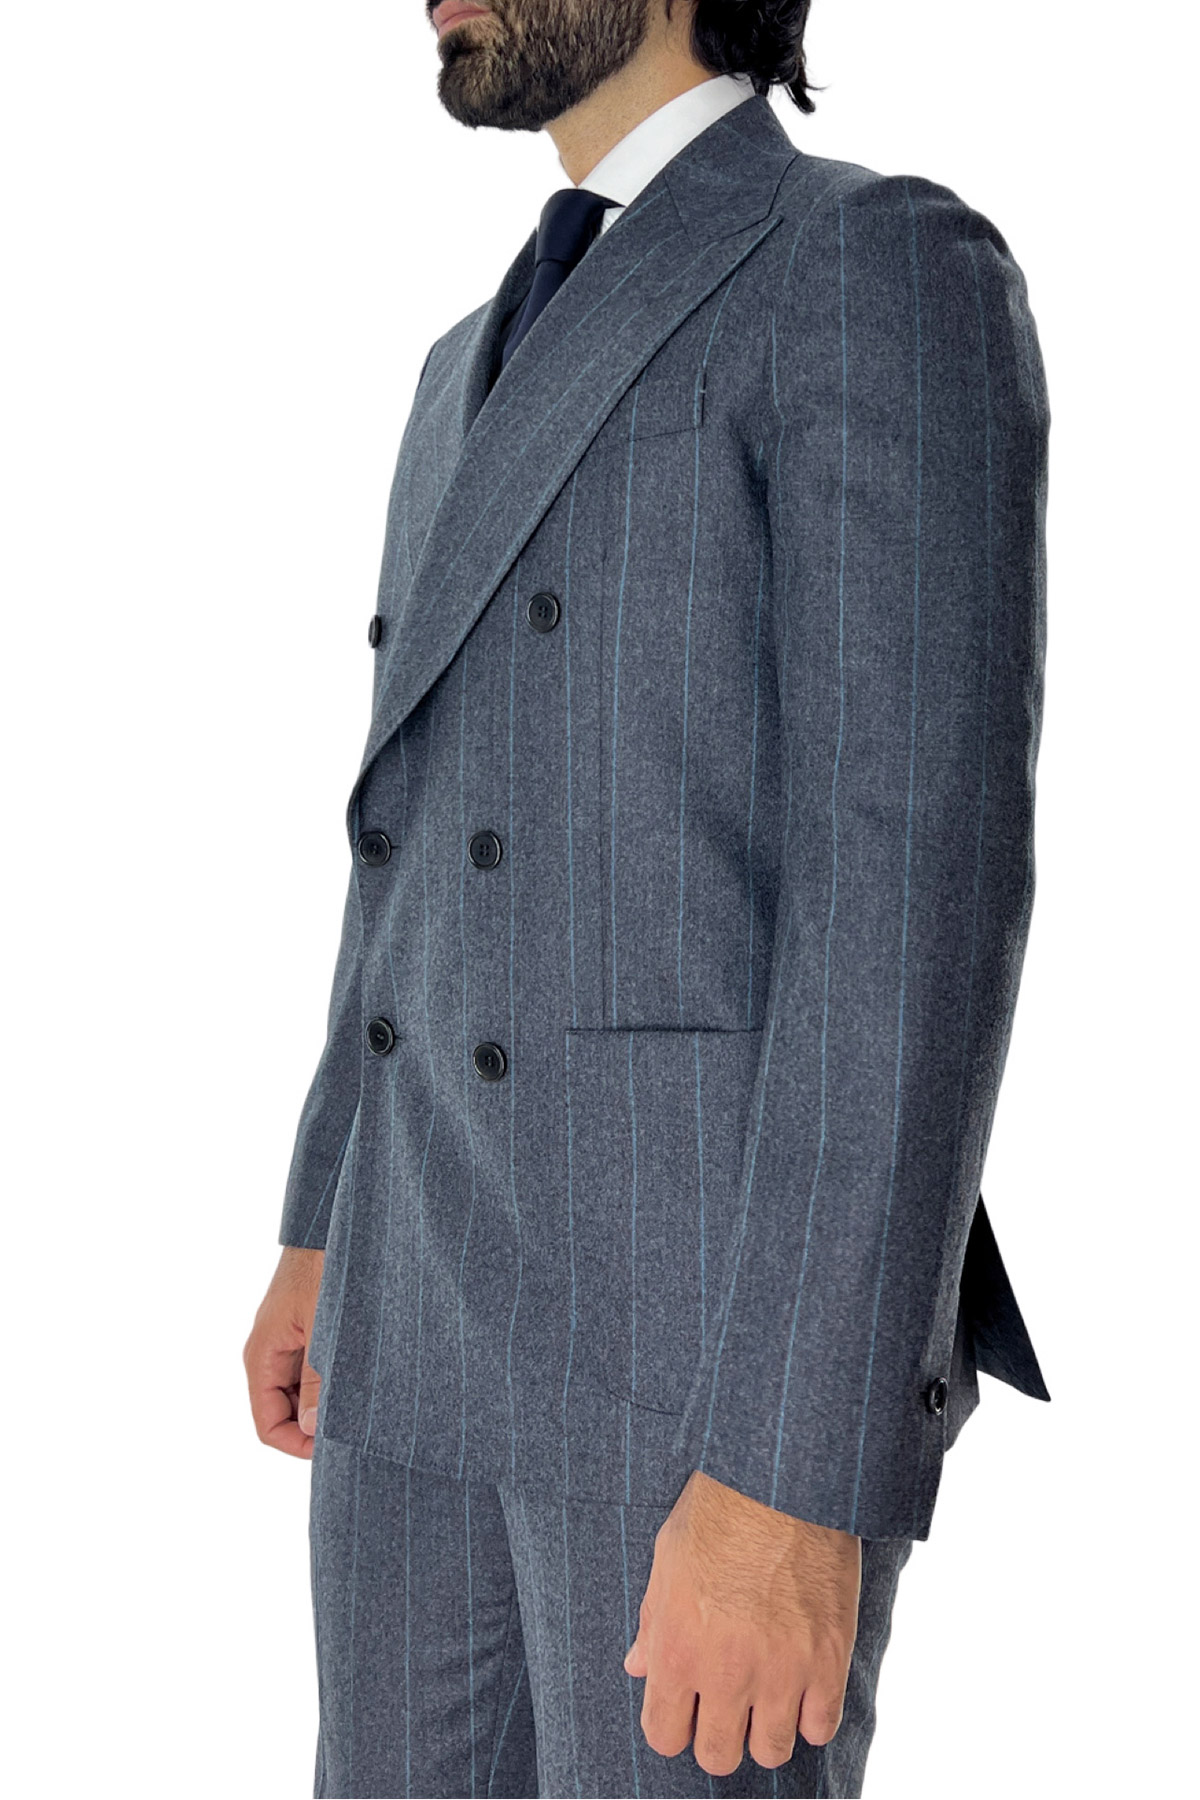 Abito uomo con giacca doppiopetto gessato grigio e pantalone slim fit tasca america in lana Vitale Barberis Canonico